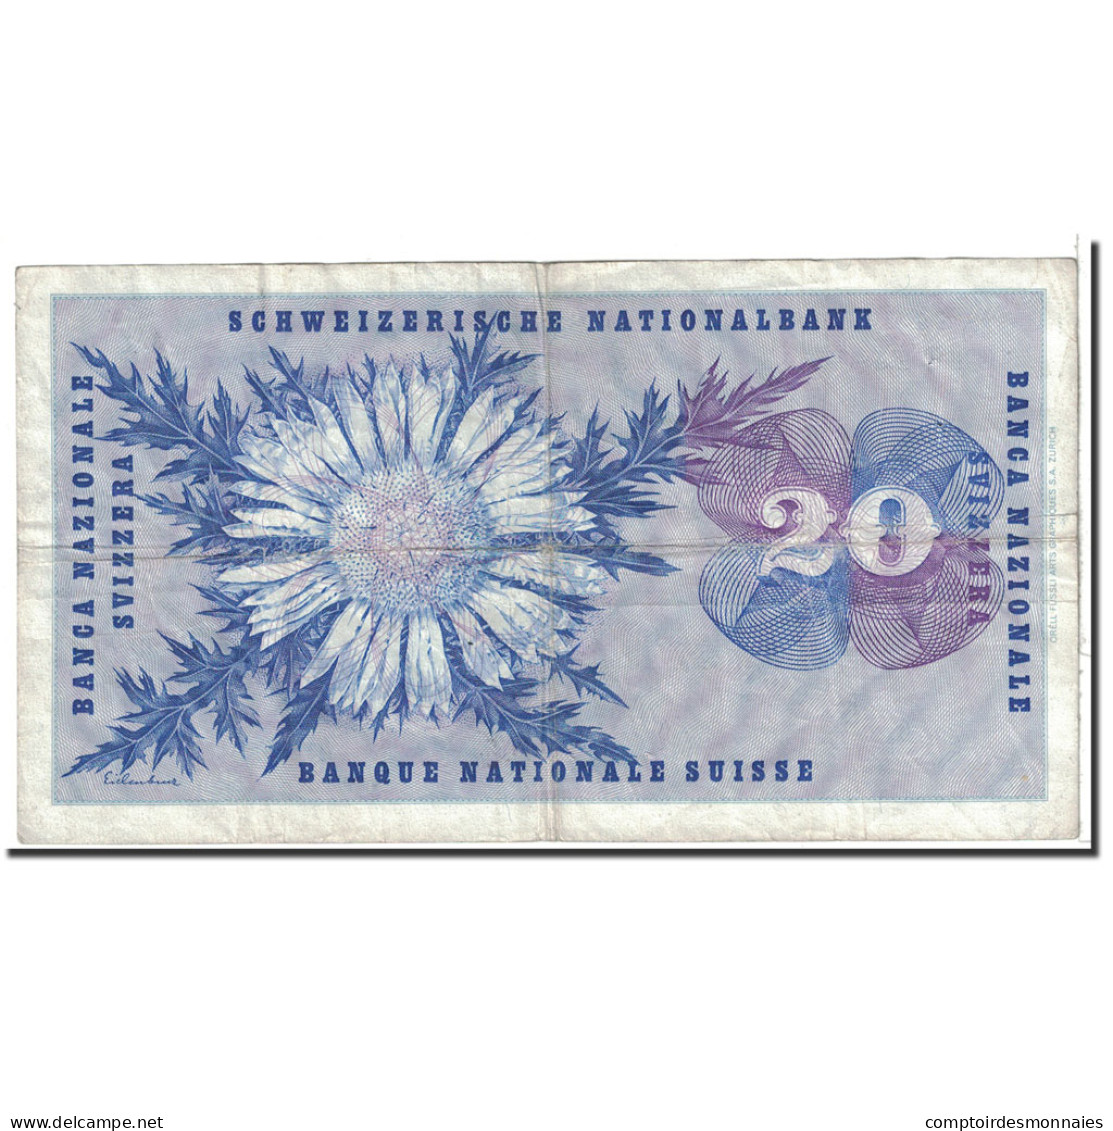 Billet, Suisse, 20 Franken, 1970, 1970-01-05, KM:46r, TTB - Zwitserland